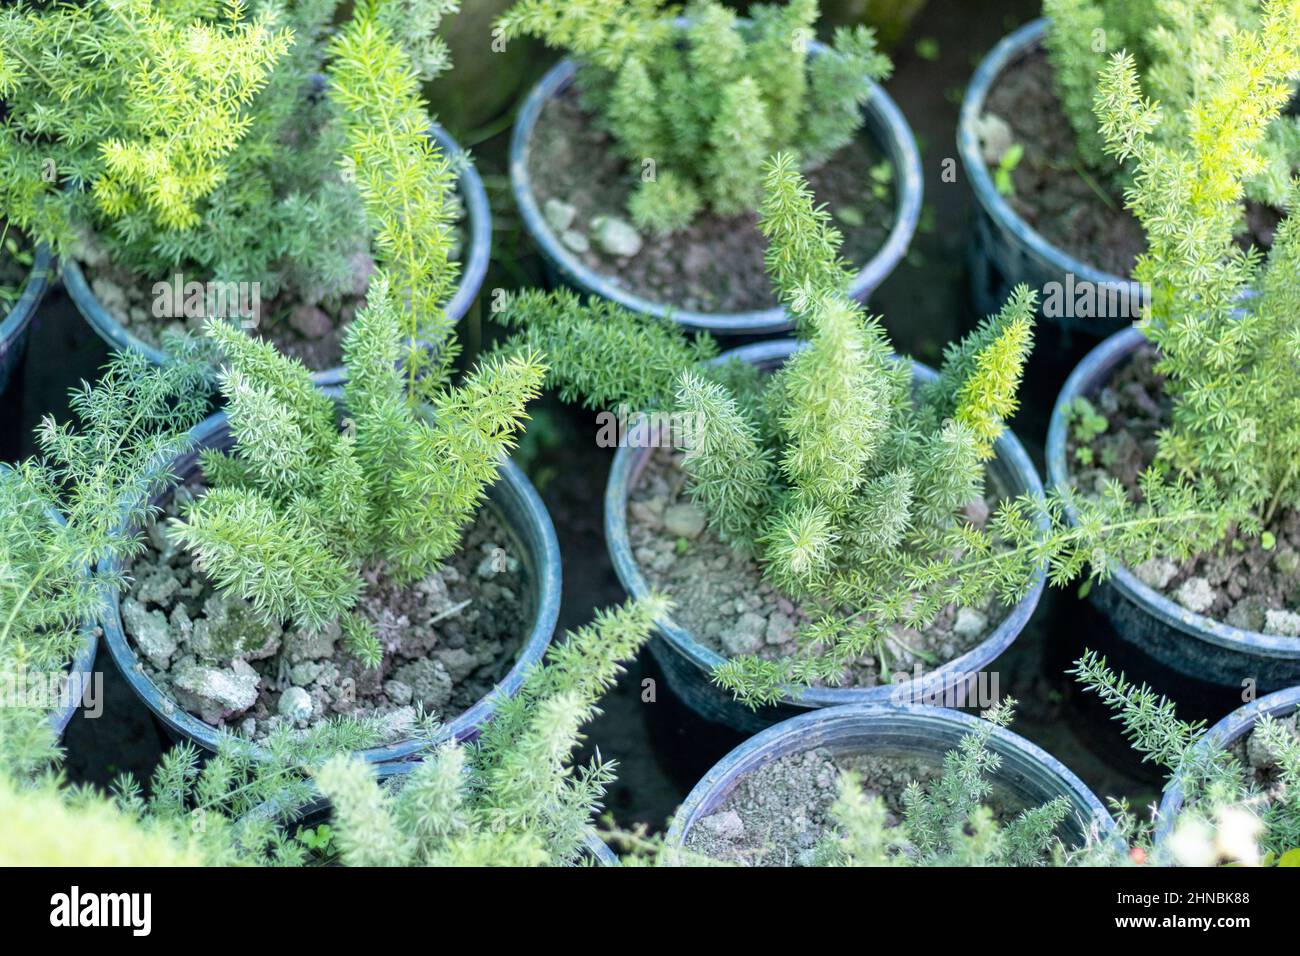 Asperges fougère de petites plantes en pot Banque D'Images